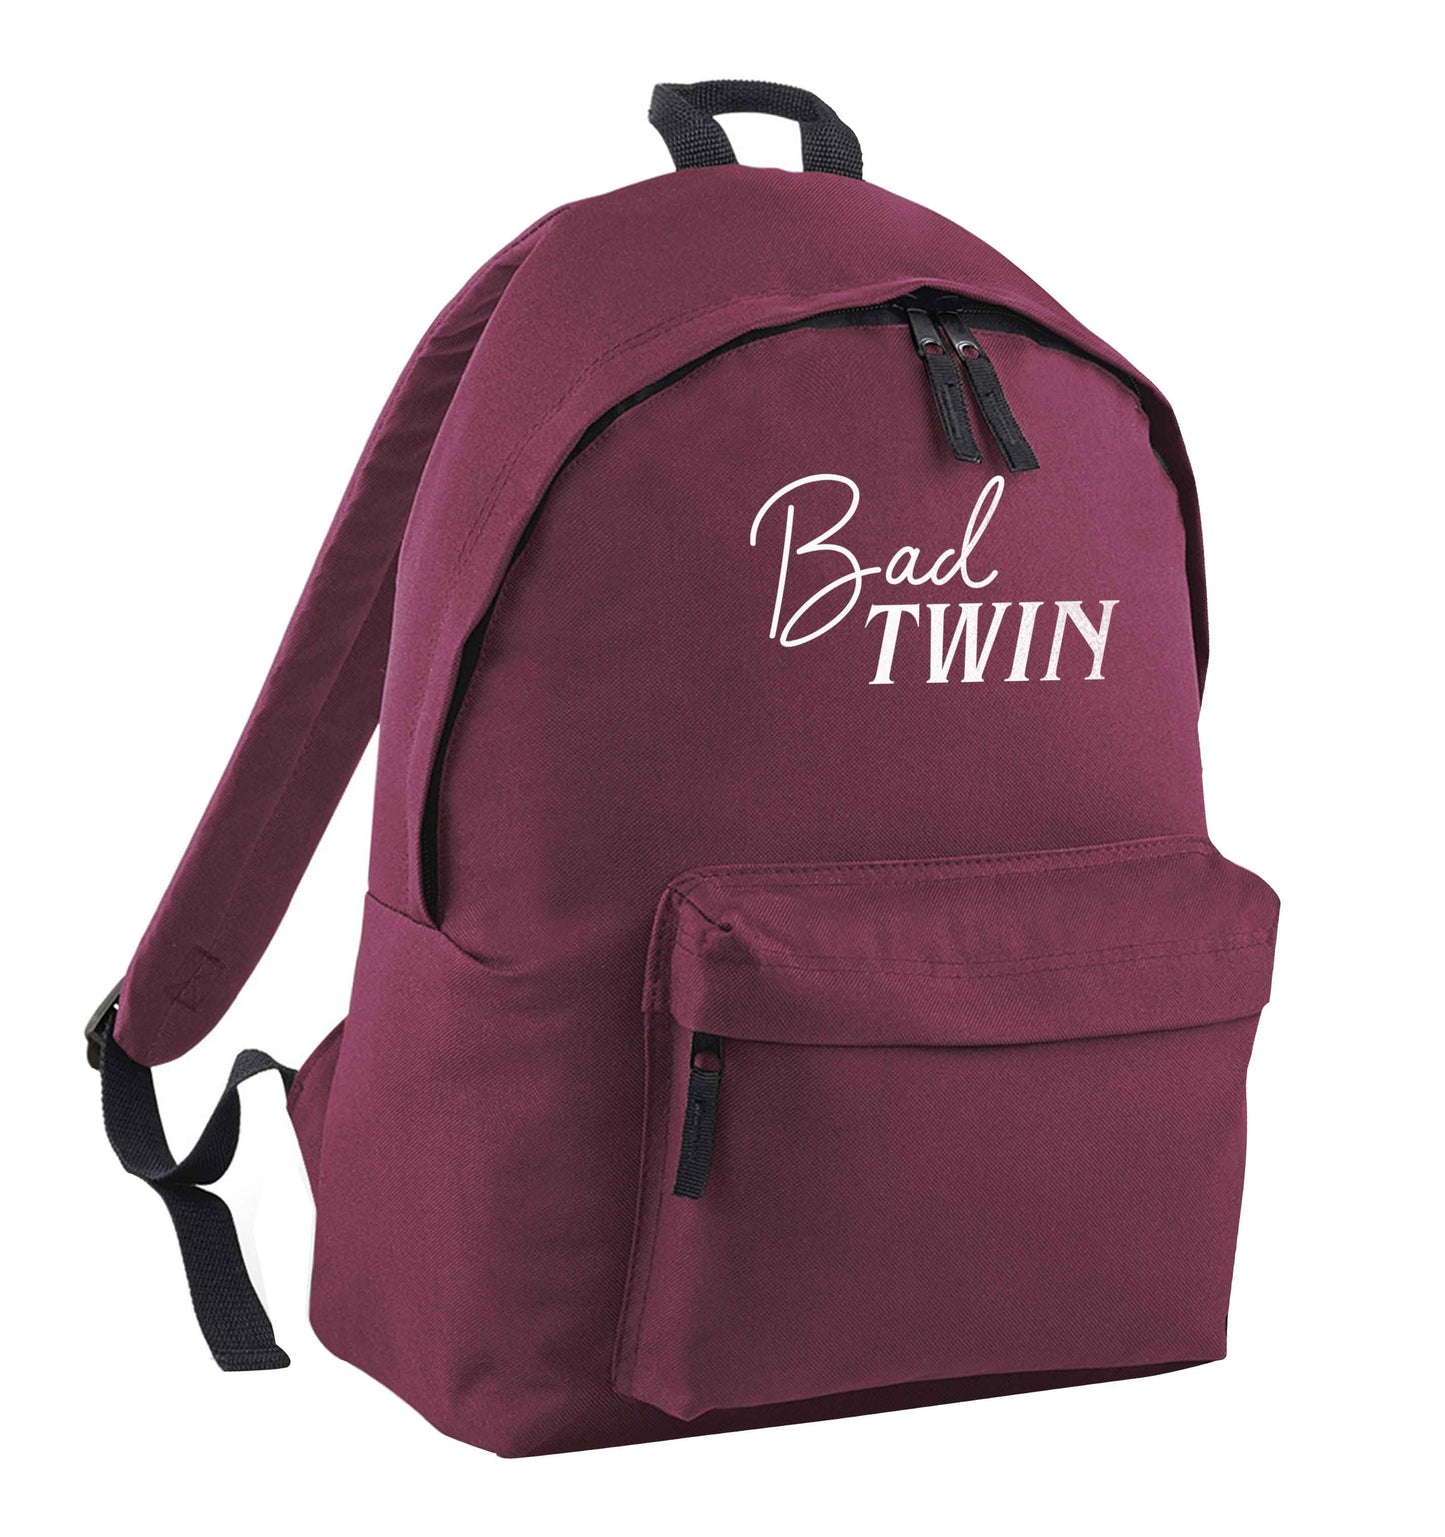 Bad twin maroon adults backpack